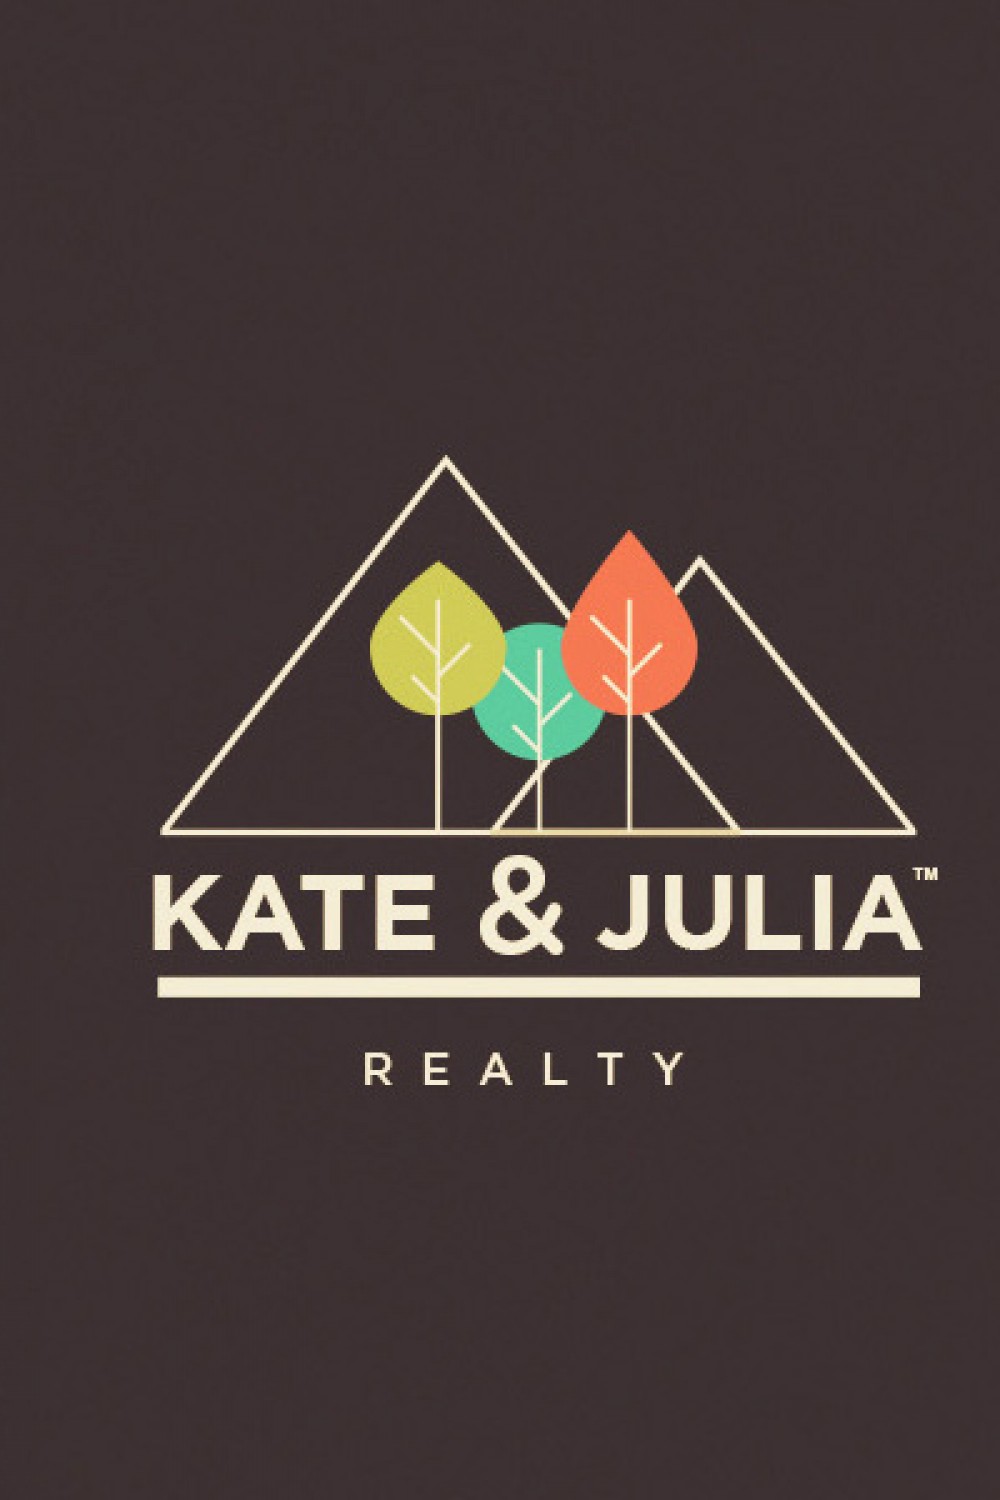 K&J Reality